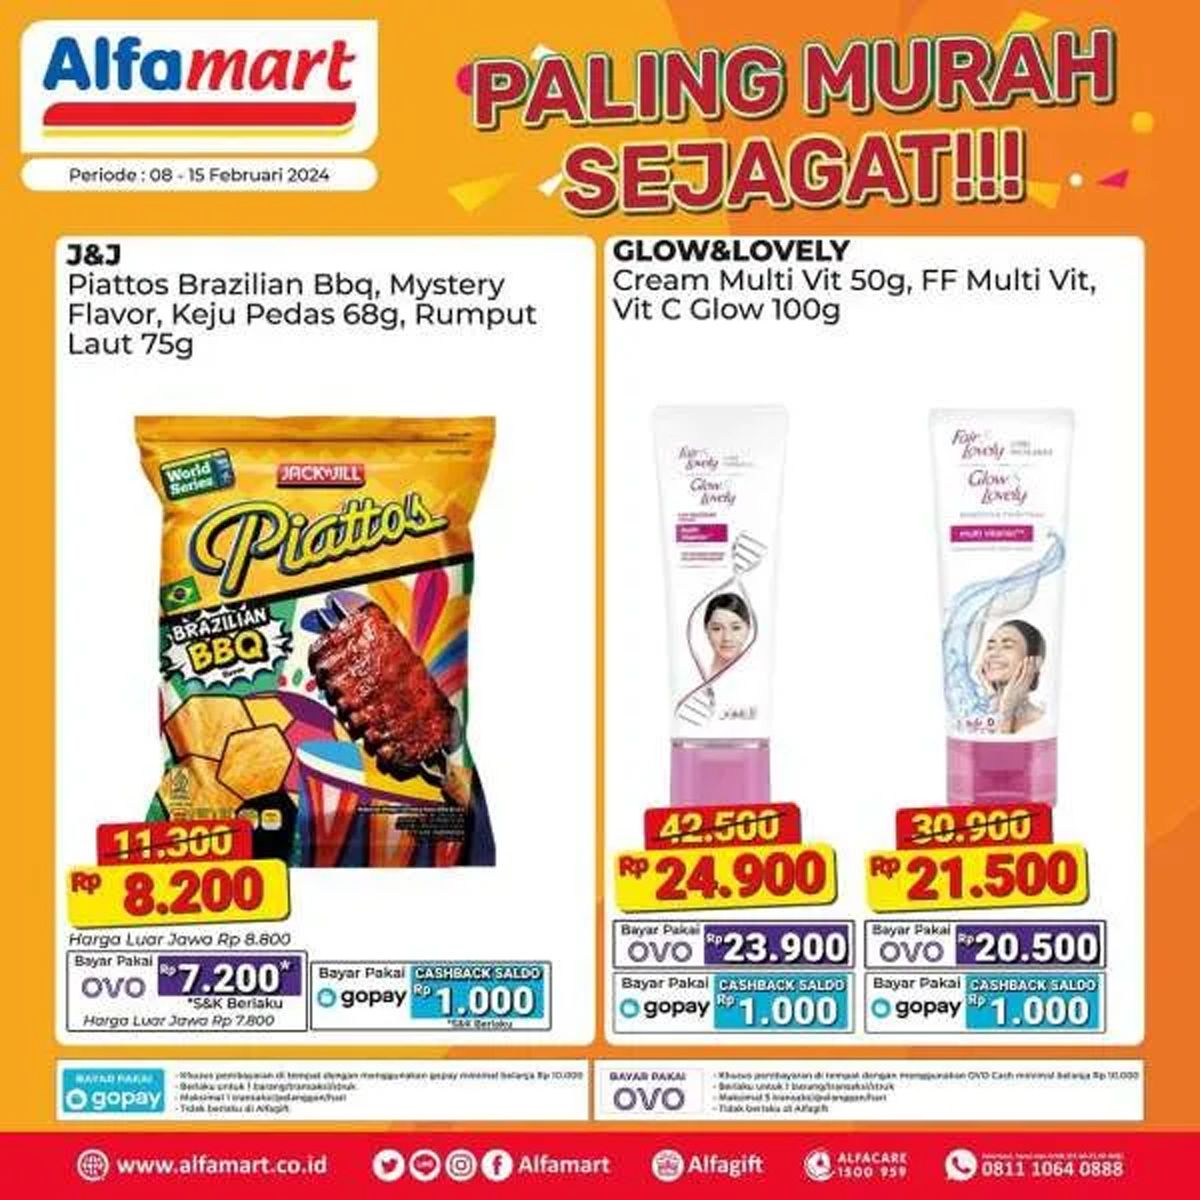  Katalog  5 produk yang dijual dalam program promo Alfamart Paling Murah Sejagat periode 8 - 15 Februari 2024./Instagram Alfamart.